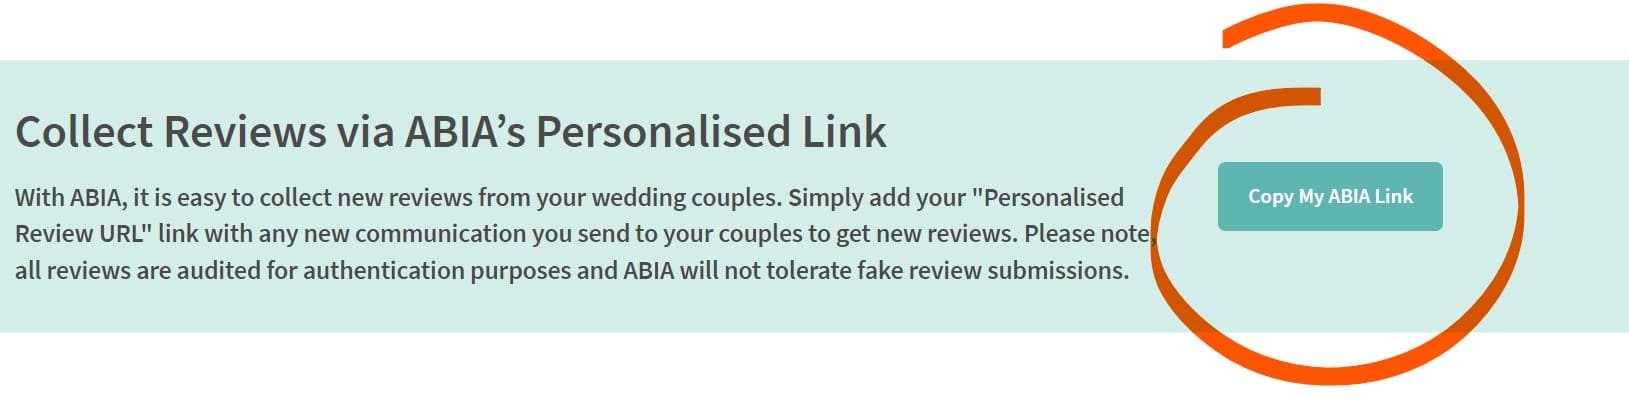 Perosnalised ABIA Link